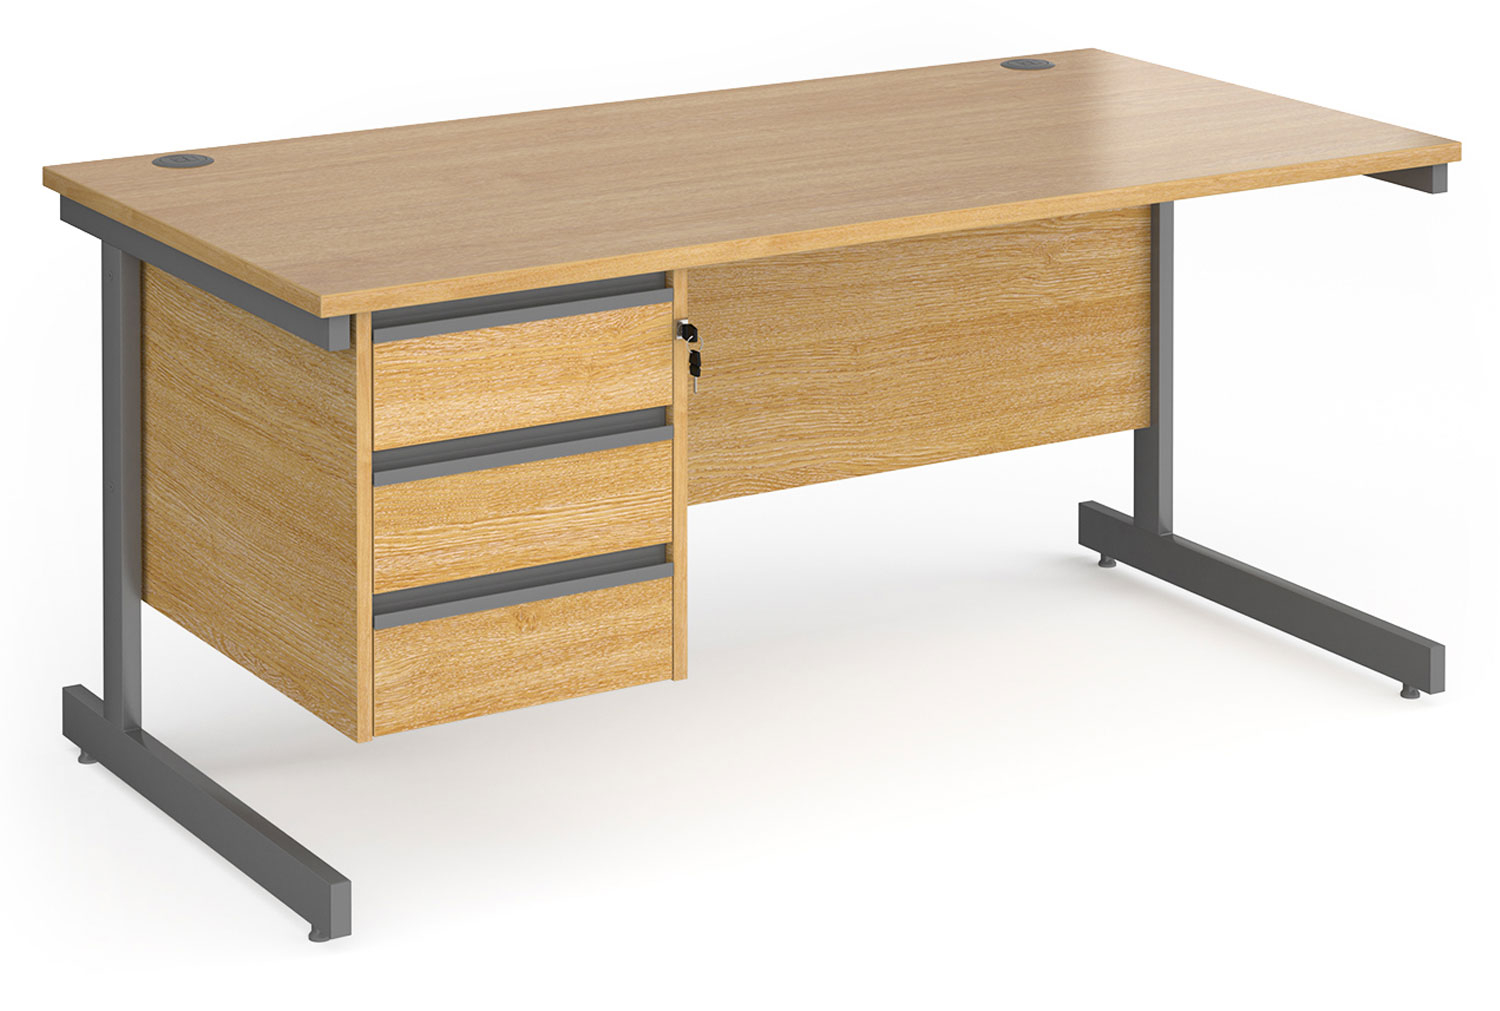 Value Line Classic+ Rectangular C-Leg Office Desk 3 Drawers (Graphite Leg), 160wx80dx73h (cm), Oak, Express Delivery